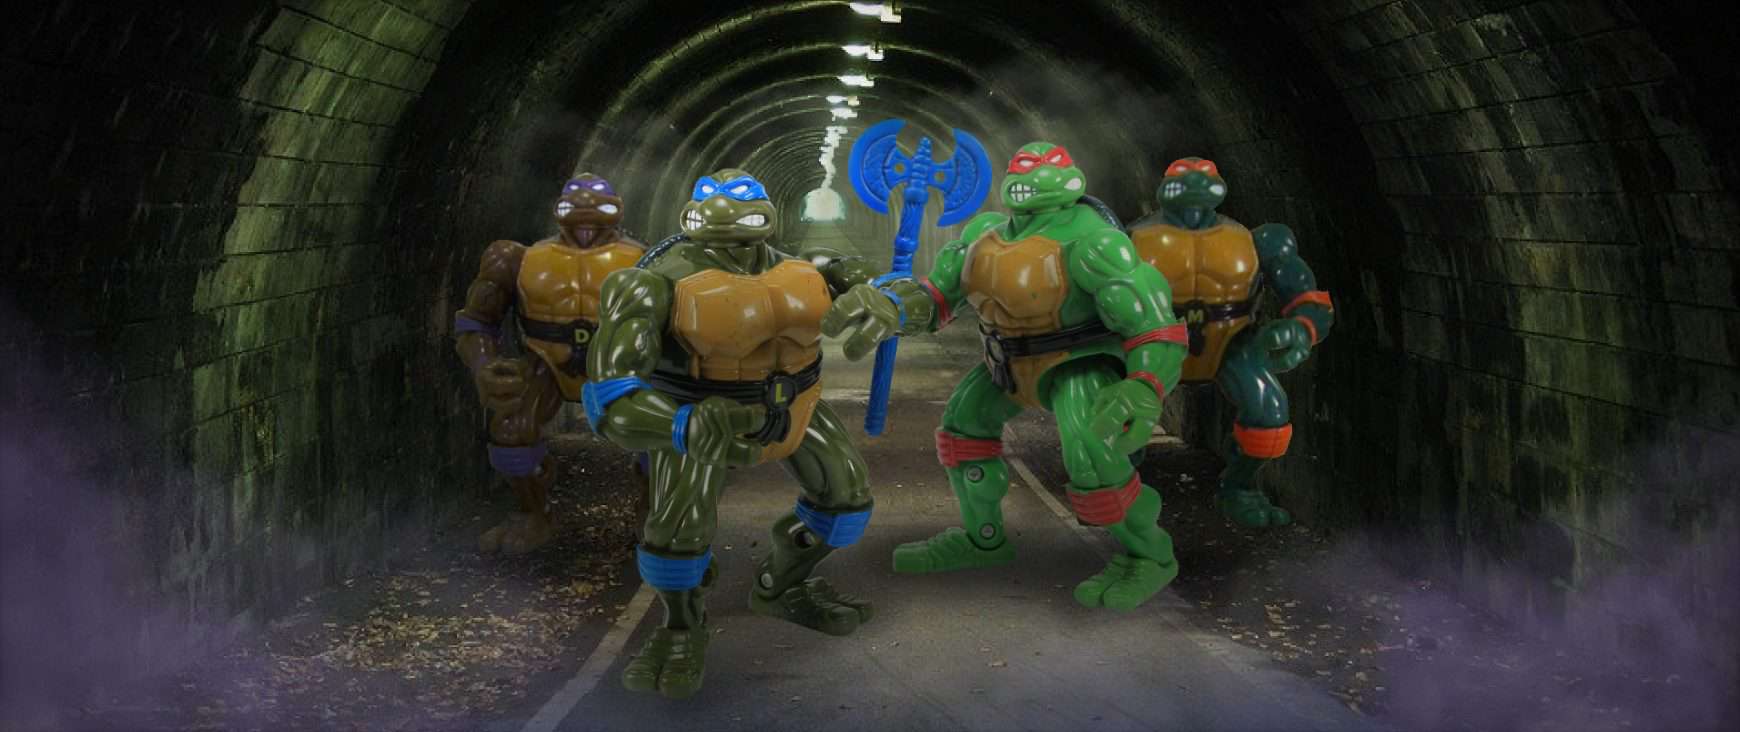 Coil Force Turtles, Teenage Mutant Ninja Turtles action figures